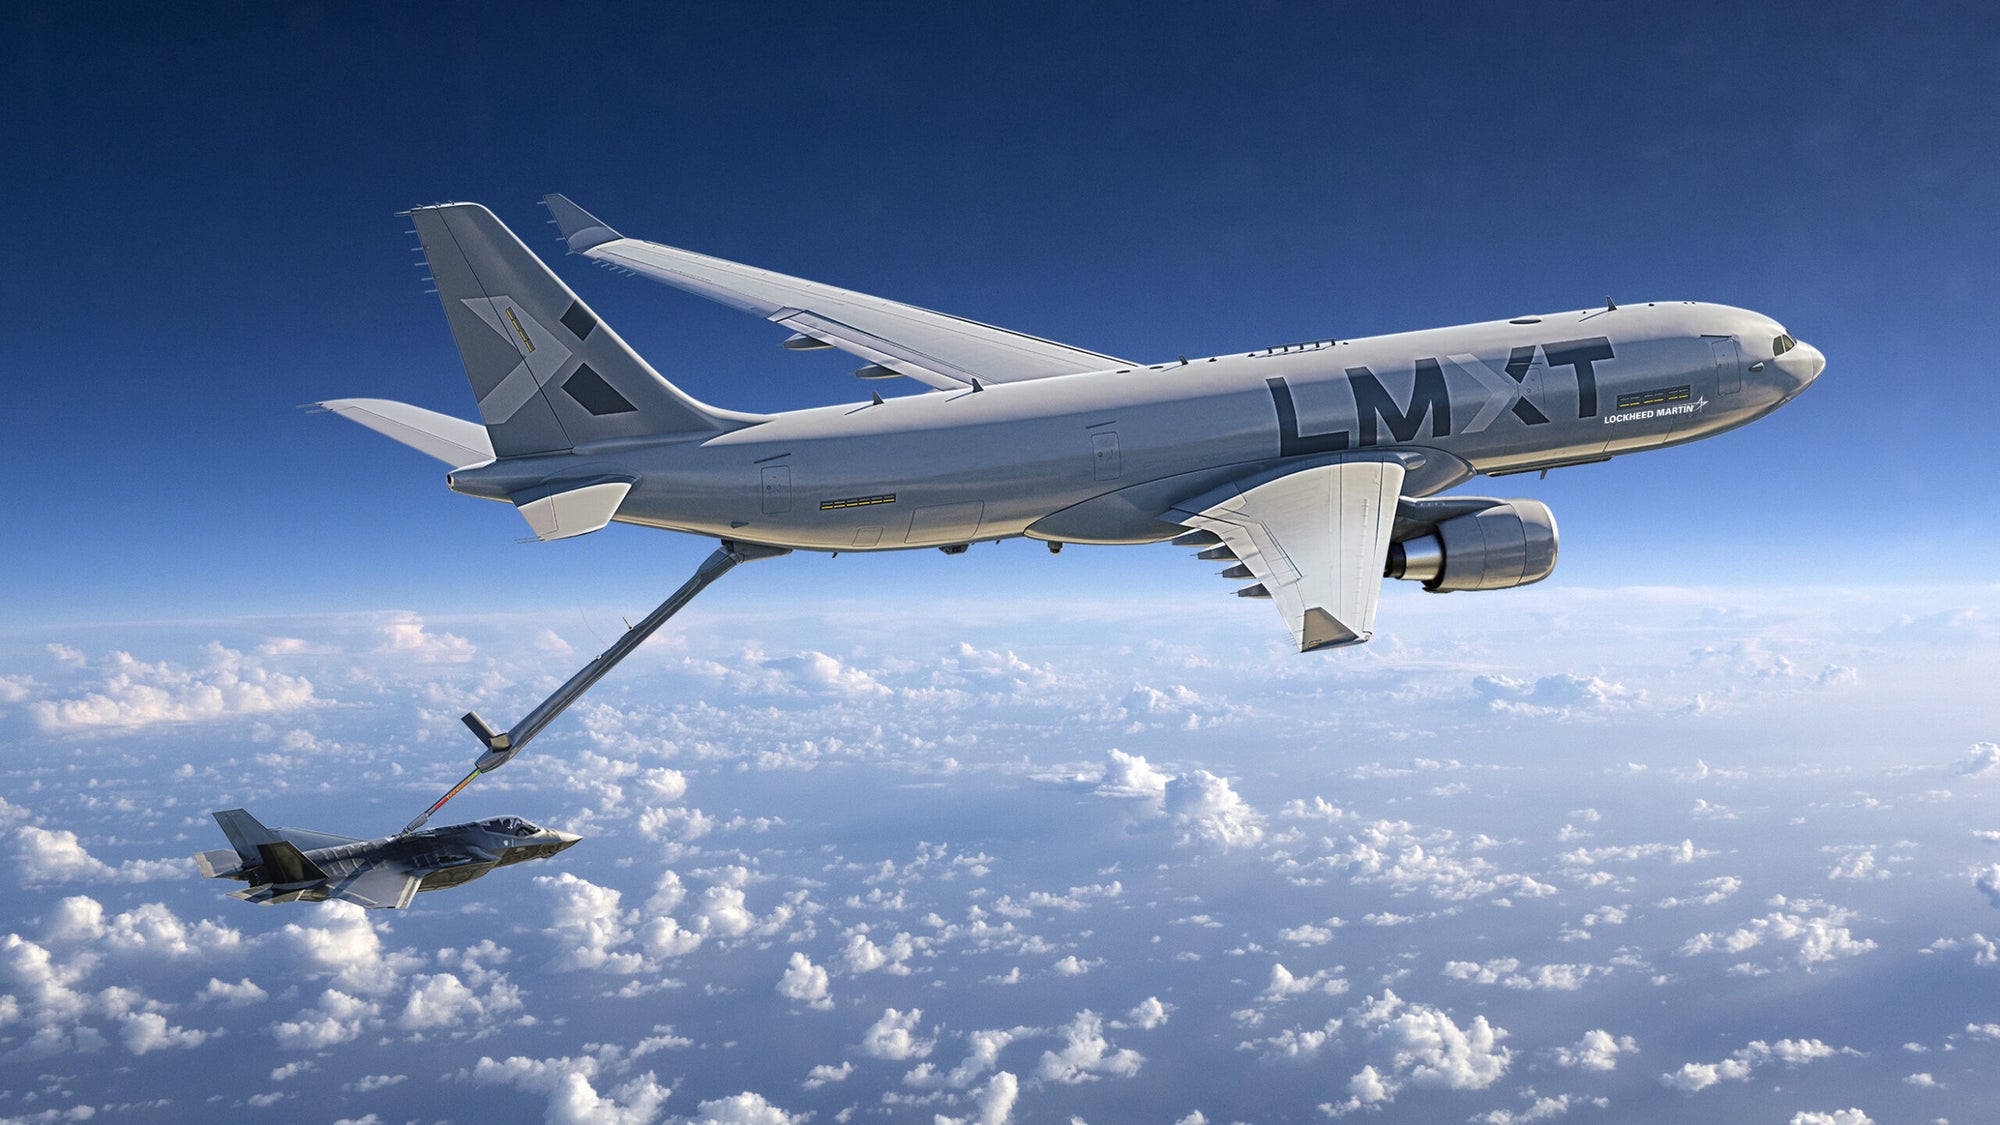 Lockheed möchte den Airbus A330 nicht mehr auf Vertragsbasis anbieten